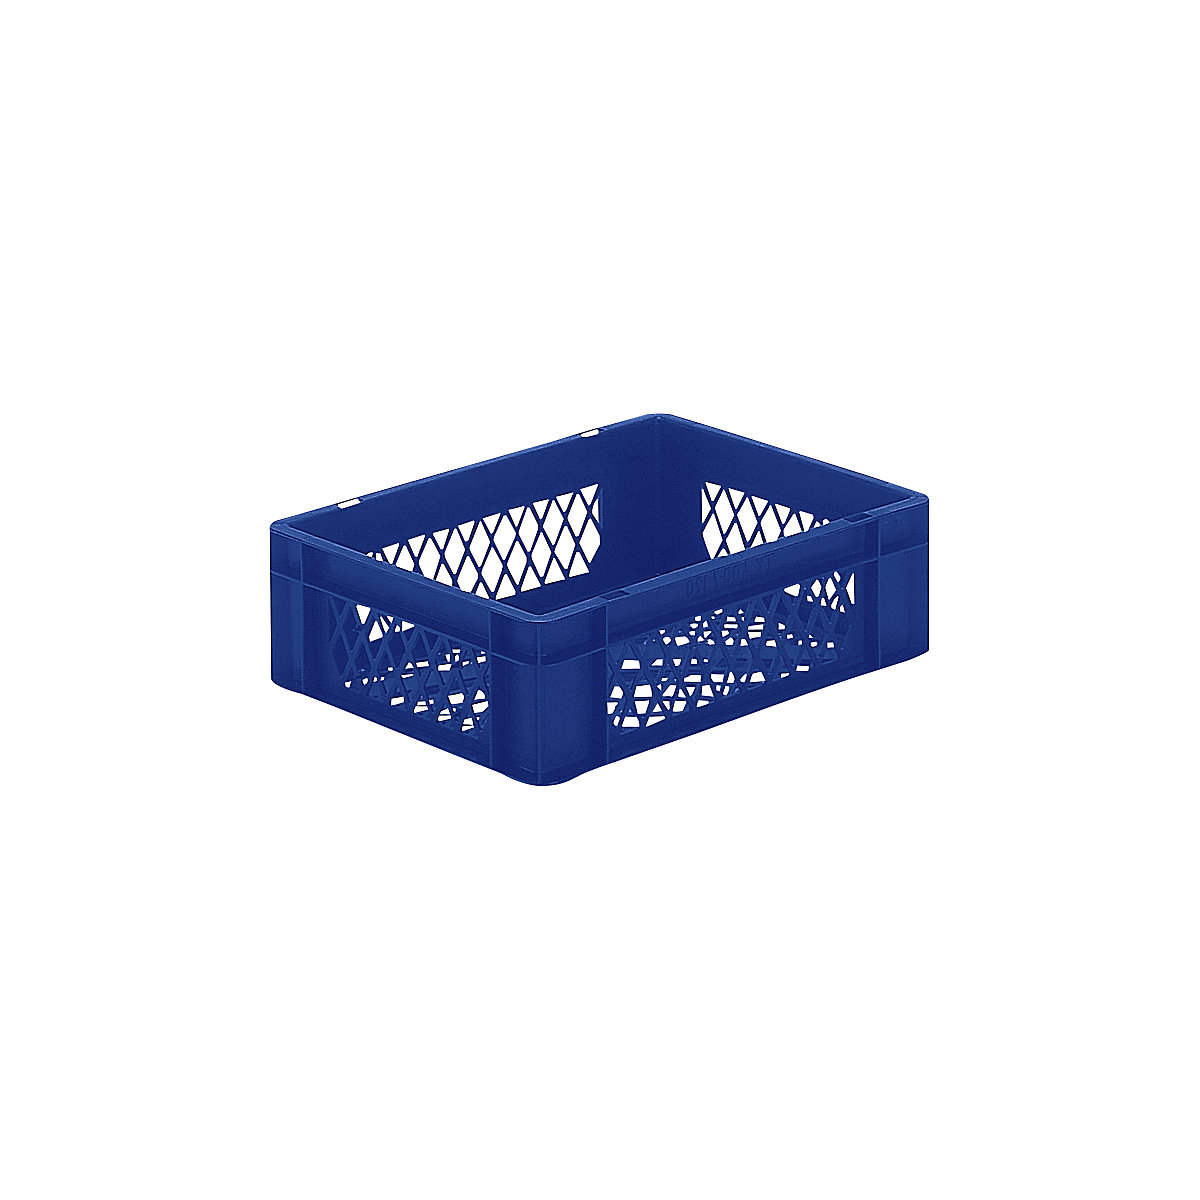 Euro-Format-Stapelbehälter, Wände und Boden durchbrochen, LxBxH 400 x 300 x 120 mm, blau, VE 5 Stk